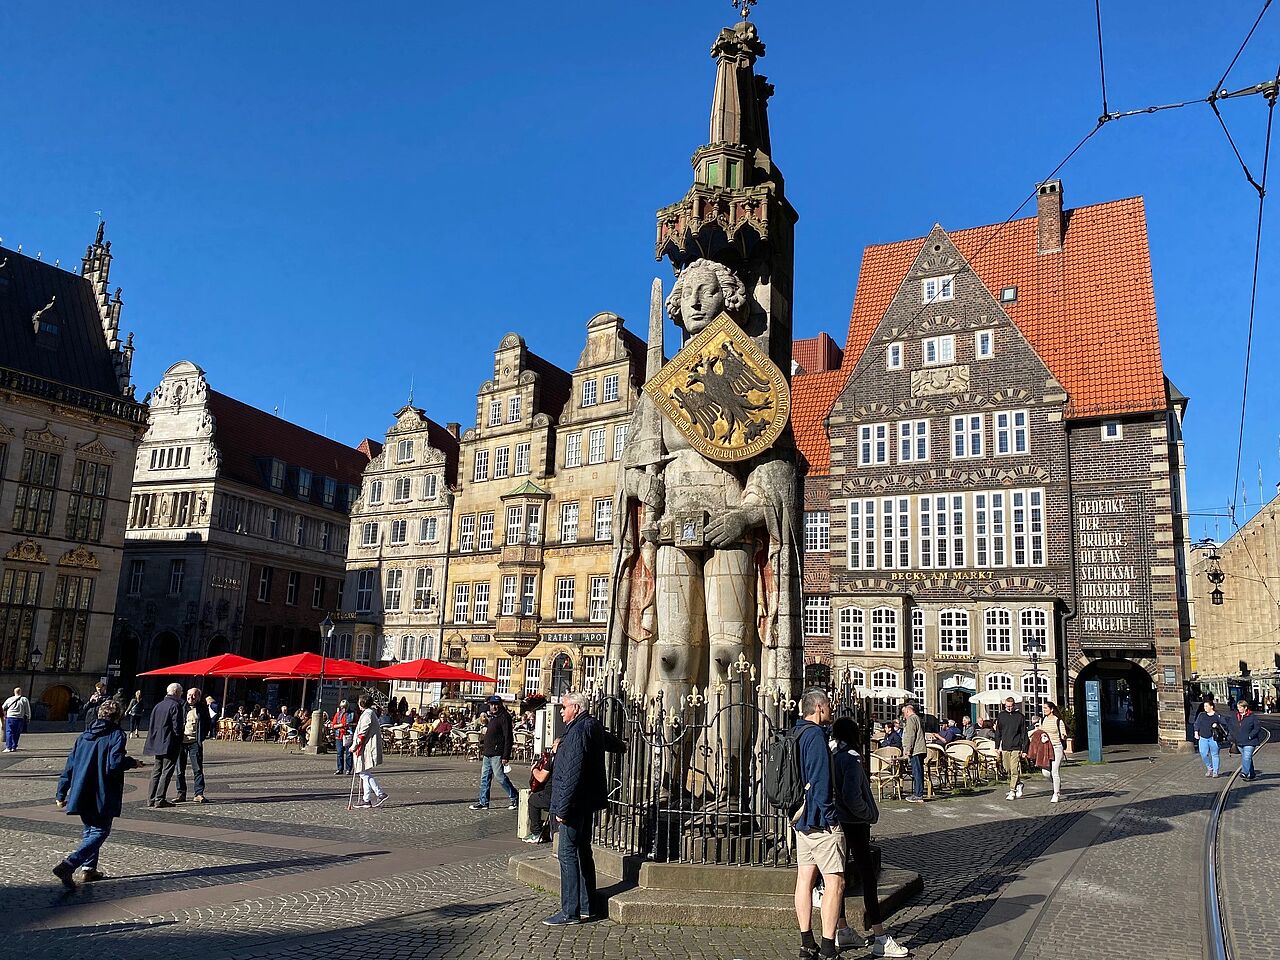 Bremen's market square with Roland sculpture